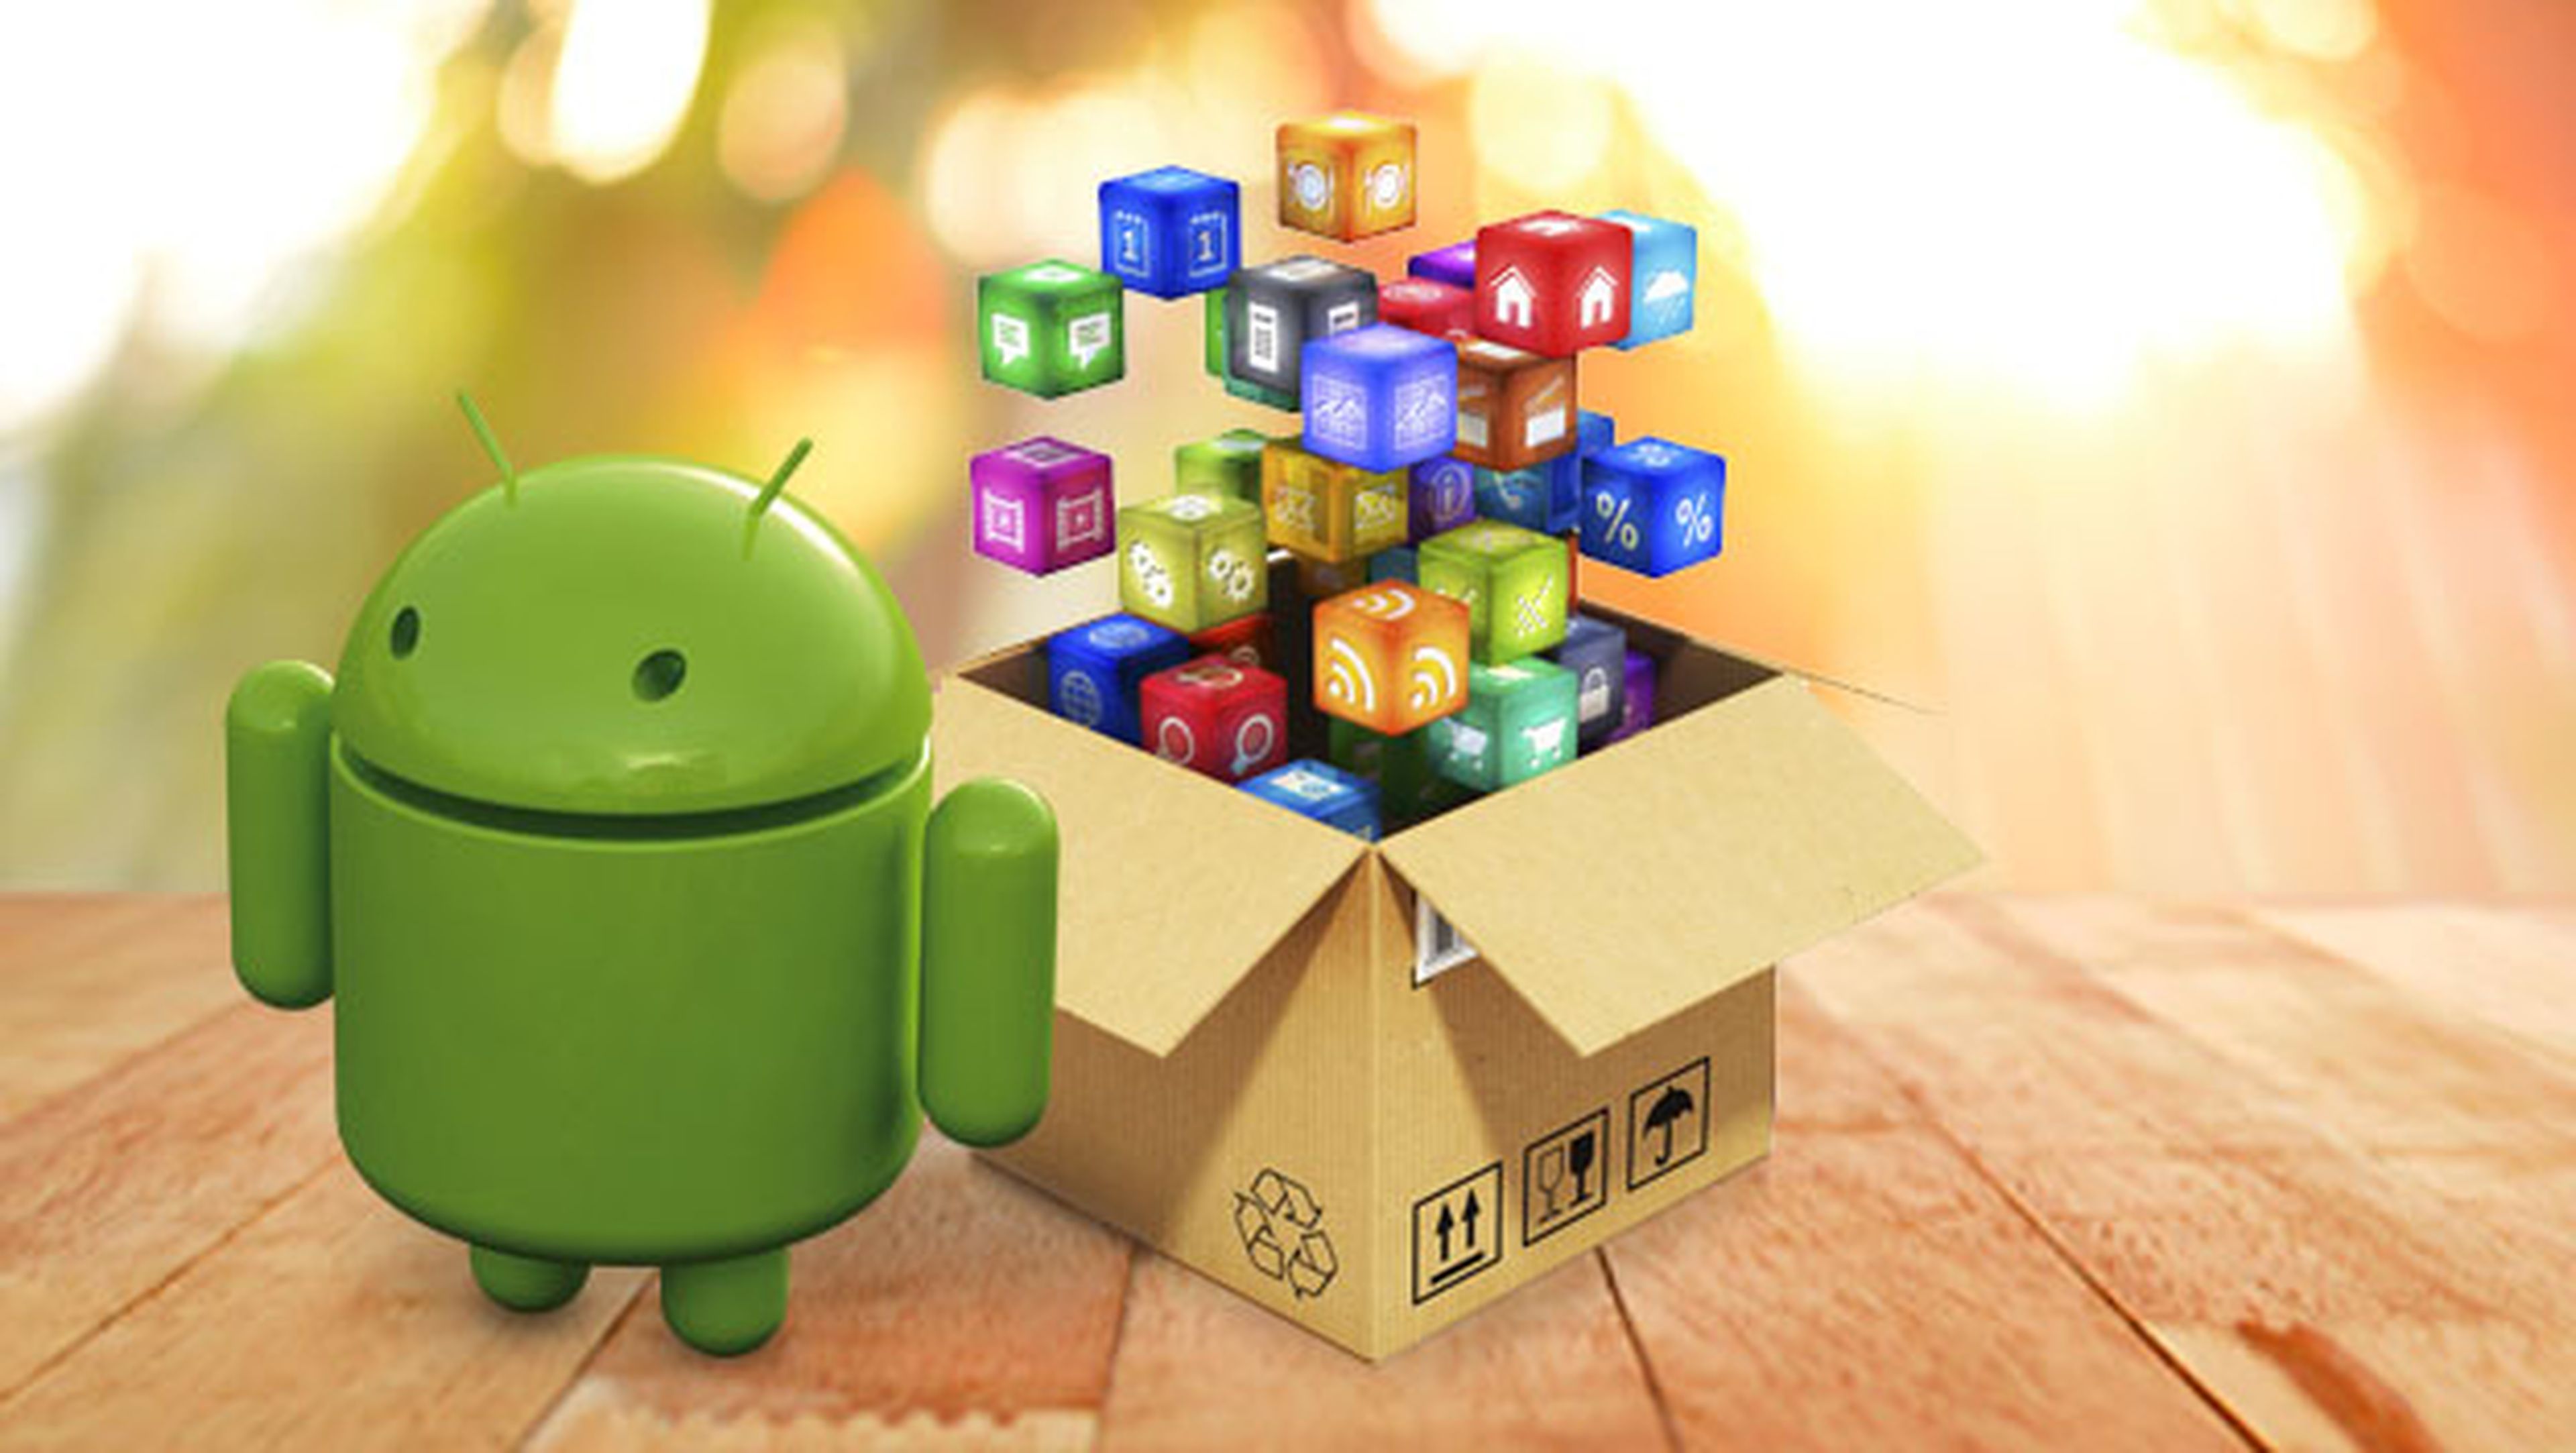 mejores aplicaciones android, aplicaciones para Android, aplicaciones destacadas android, apps android de la semana